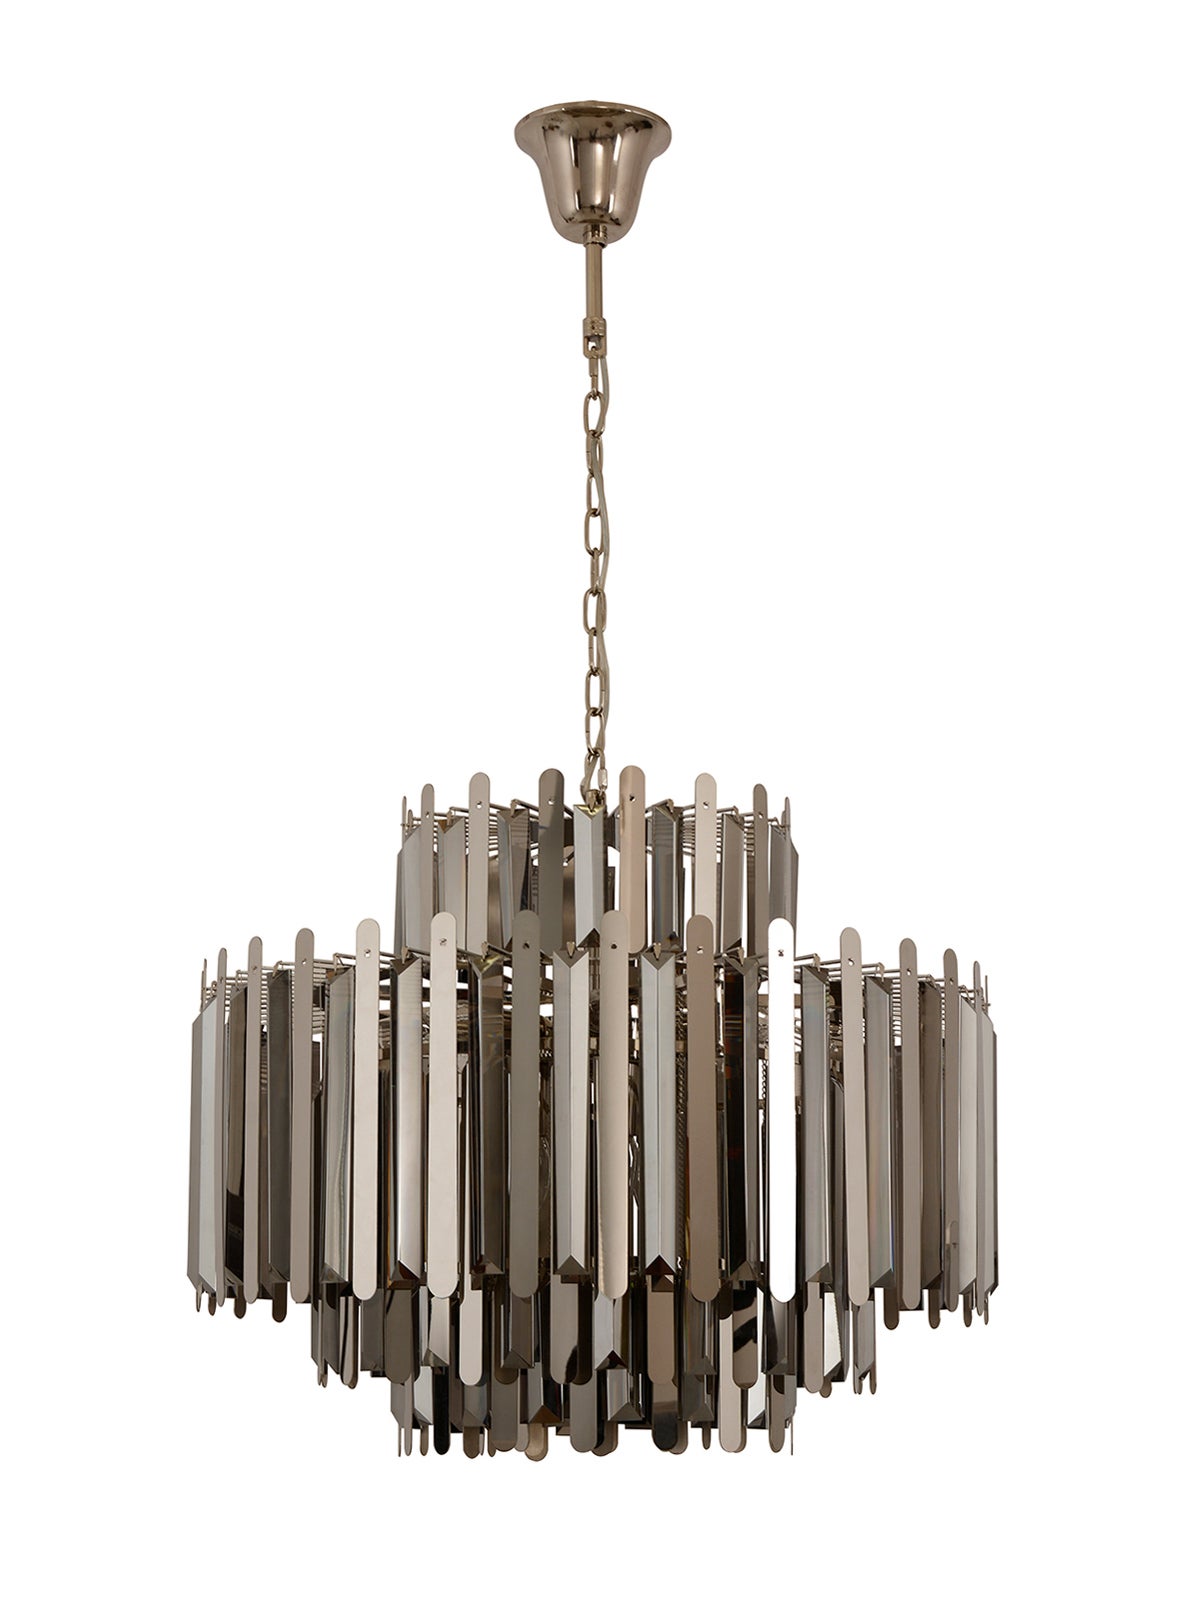 110V Elegant Ceiling Light Crystal Chandelier 10 Heads Home Decorative Lamp 